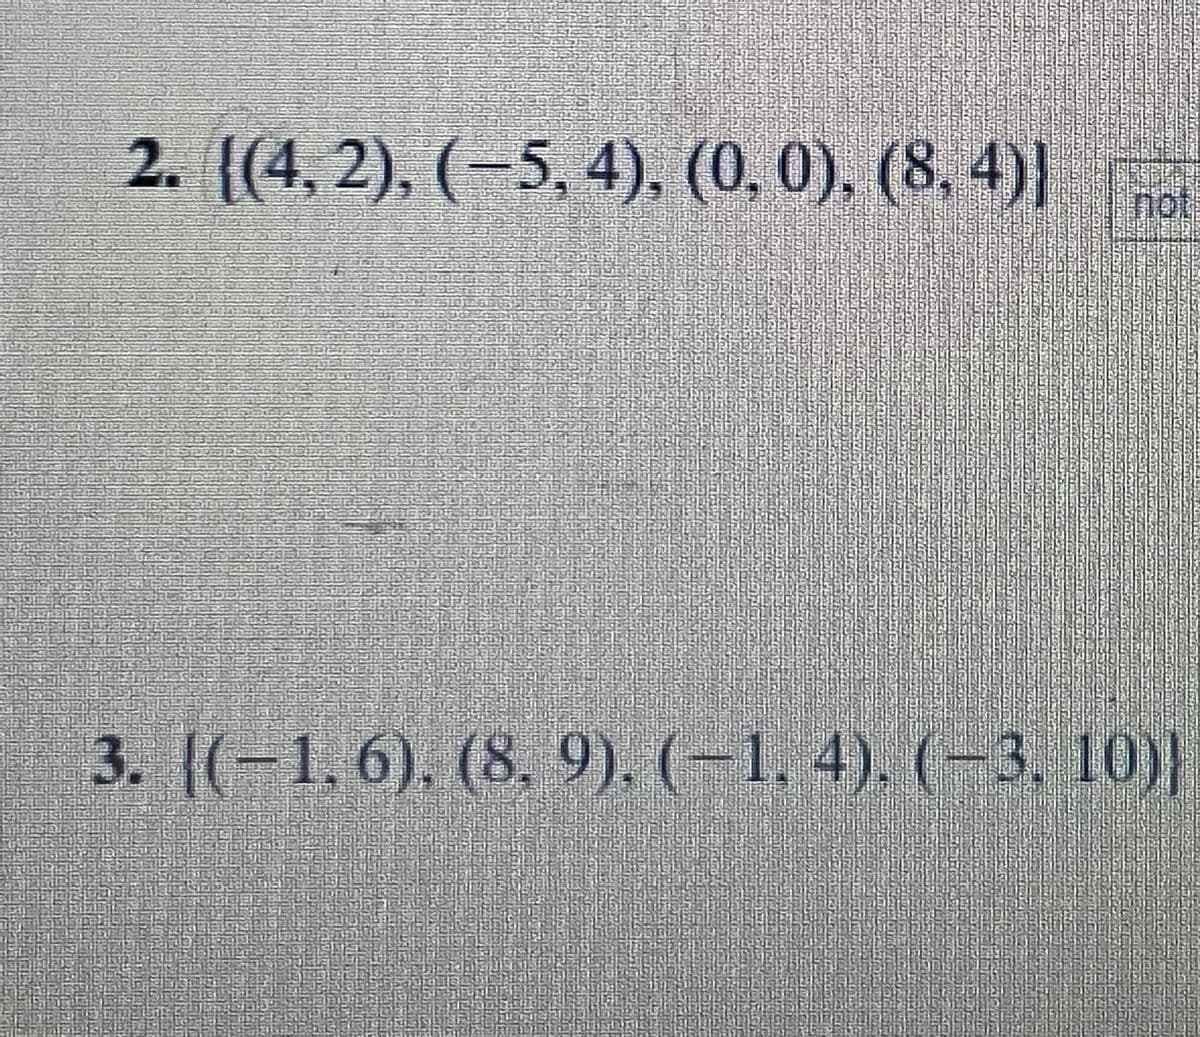 2. ((4, 2), (-5, 4), (0. 0), (8, 4)|
not
3. [(-1. 6), (8, 9). (-1, 4). (-3, 10)|
